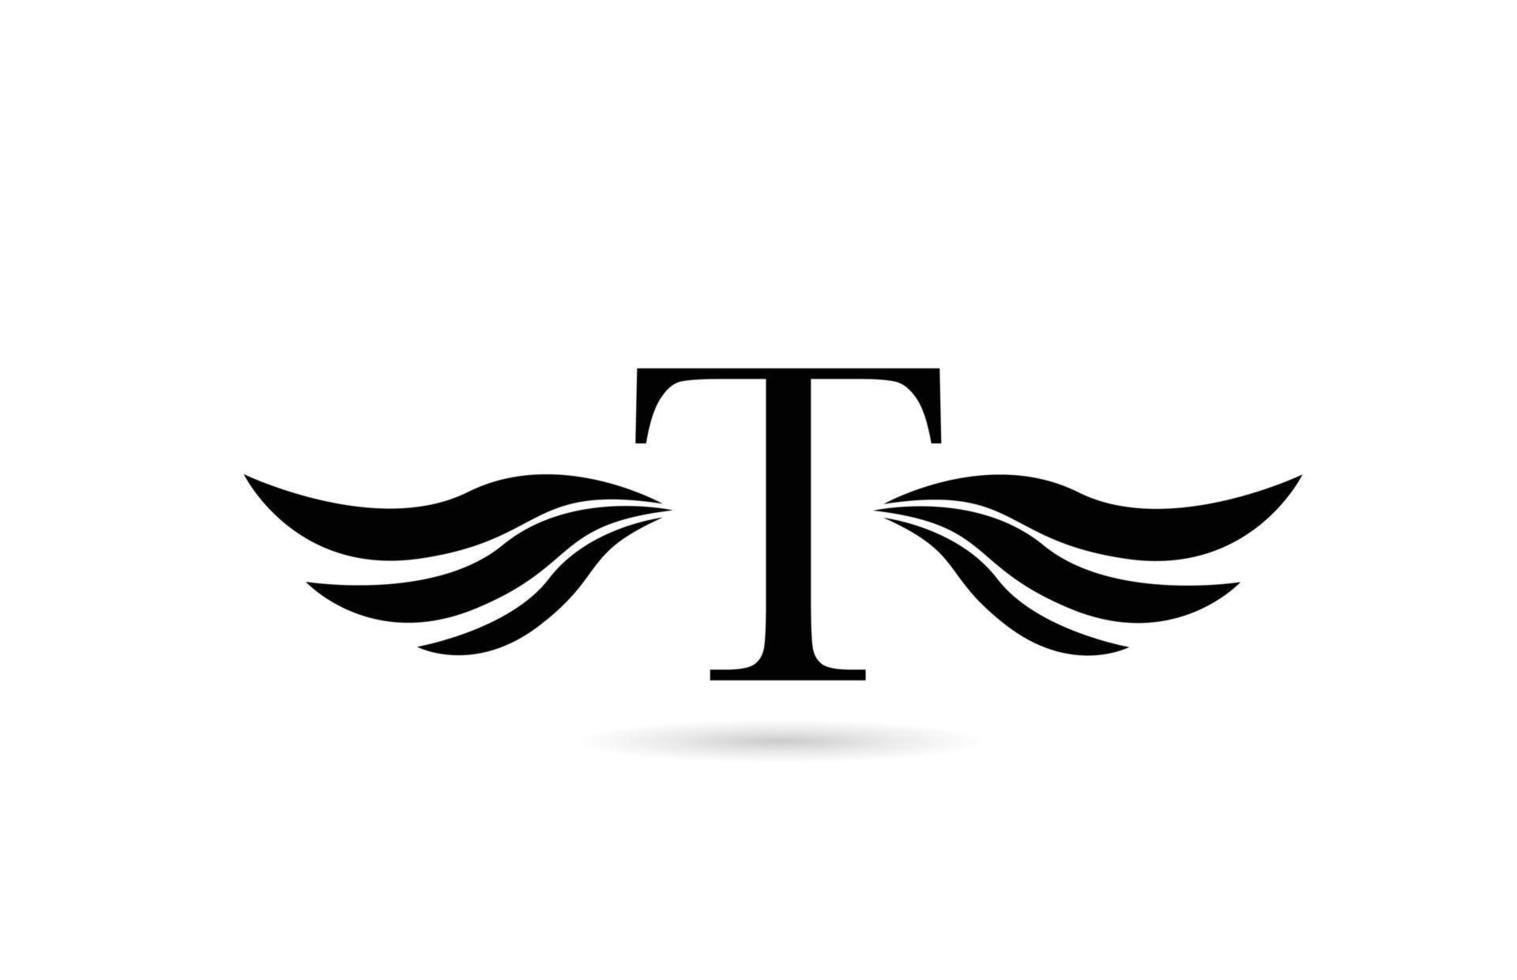 Diseño del icono del logotipo de la letra del alfabeto t con alas. plantilla creativa para negocios y empresas en blanco y negro vector